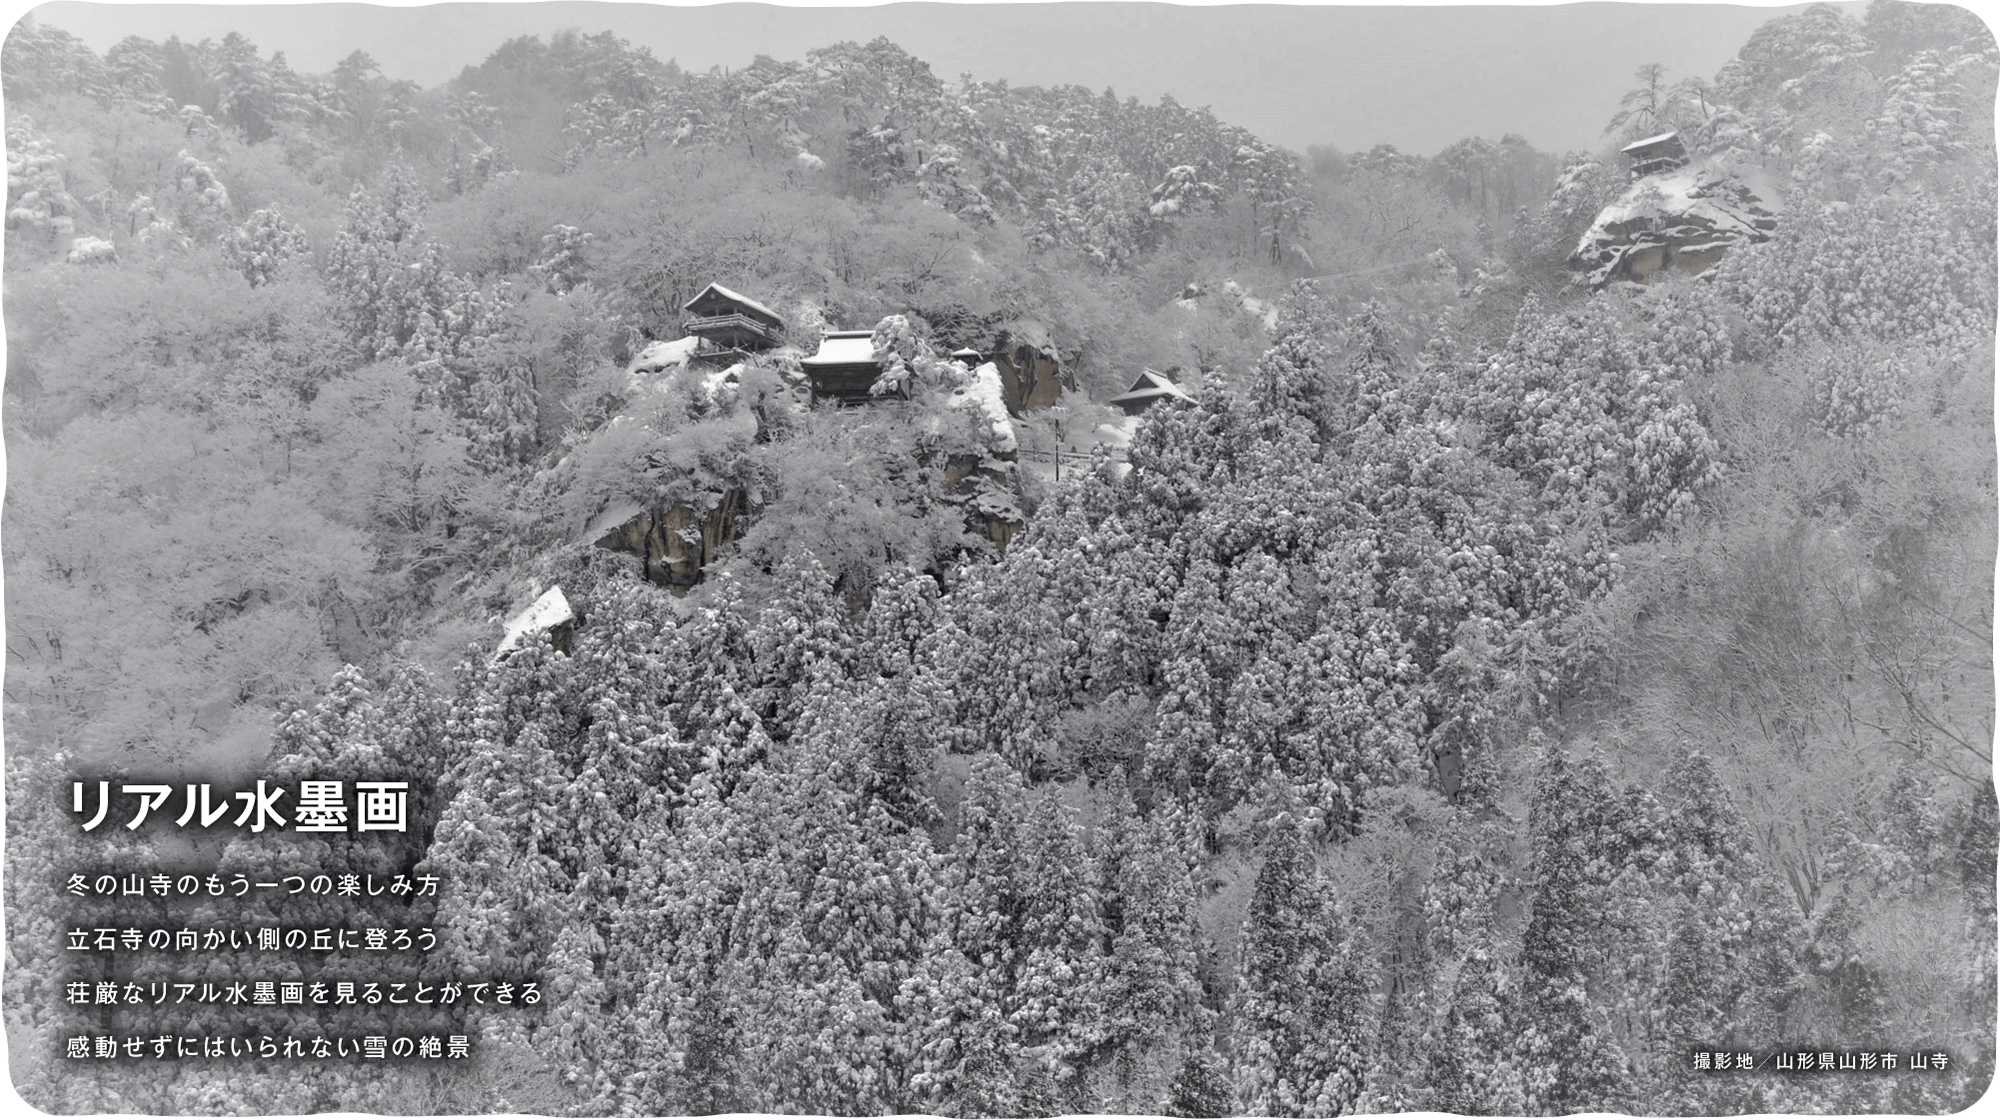 リアル水墨画　冬の山寺のもう一つの楽しみ方立石寺の向かい側の丘に登ろう荘厳なリアル水墨画を見ることができる感動せずにはいられない雪の絶景